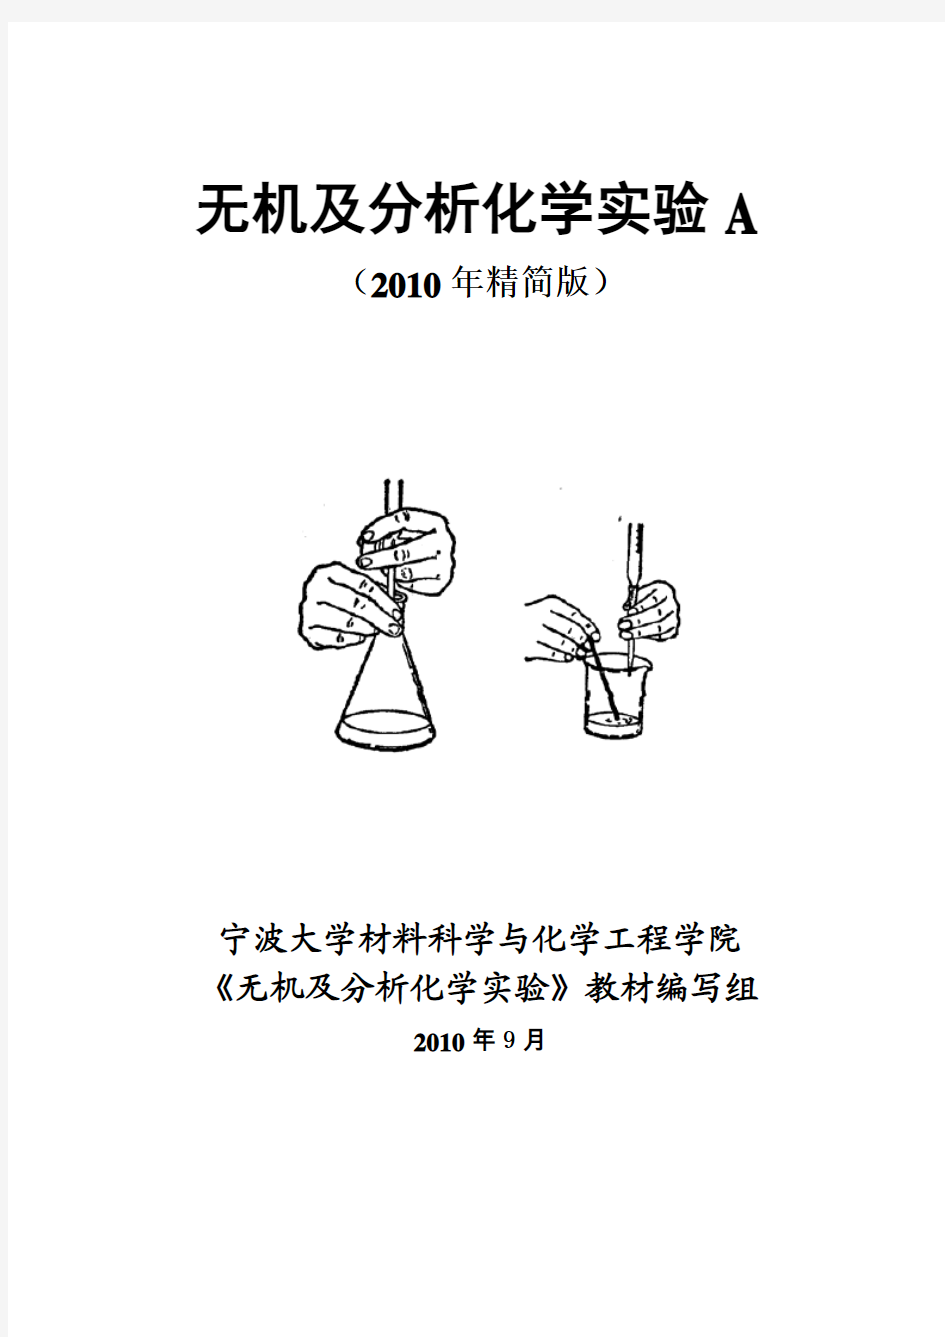 无机及分析化学实验讲义(10年精简版)修改版